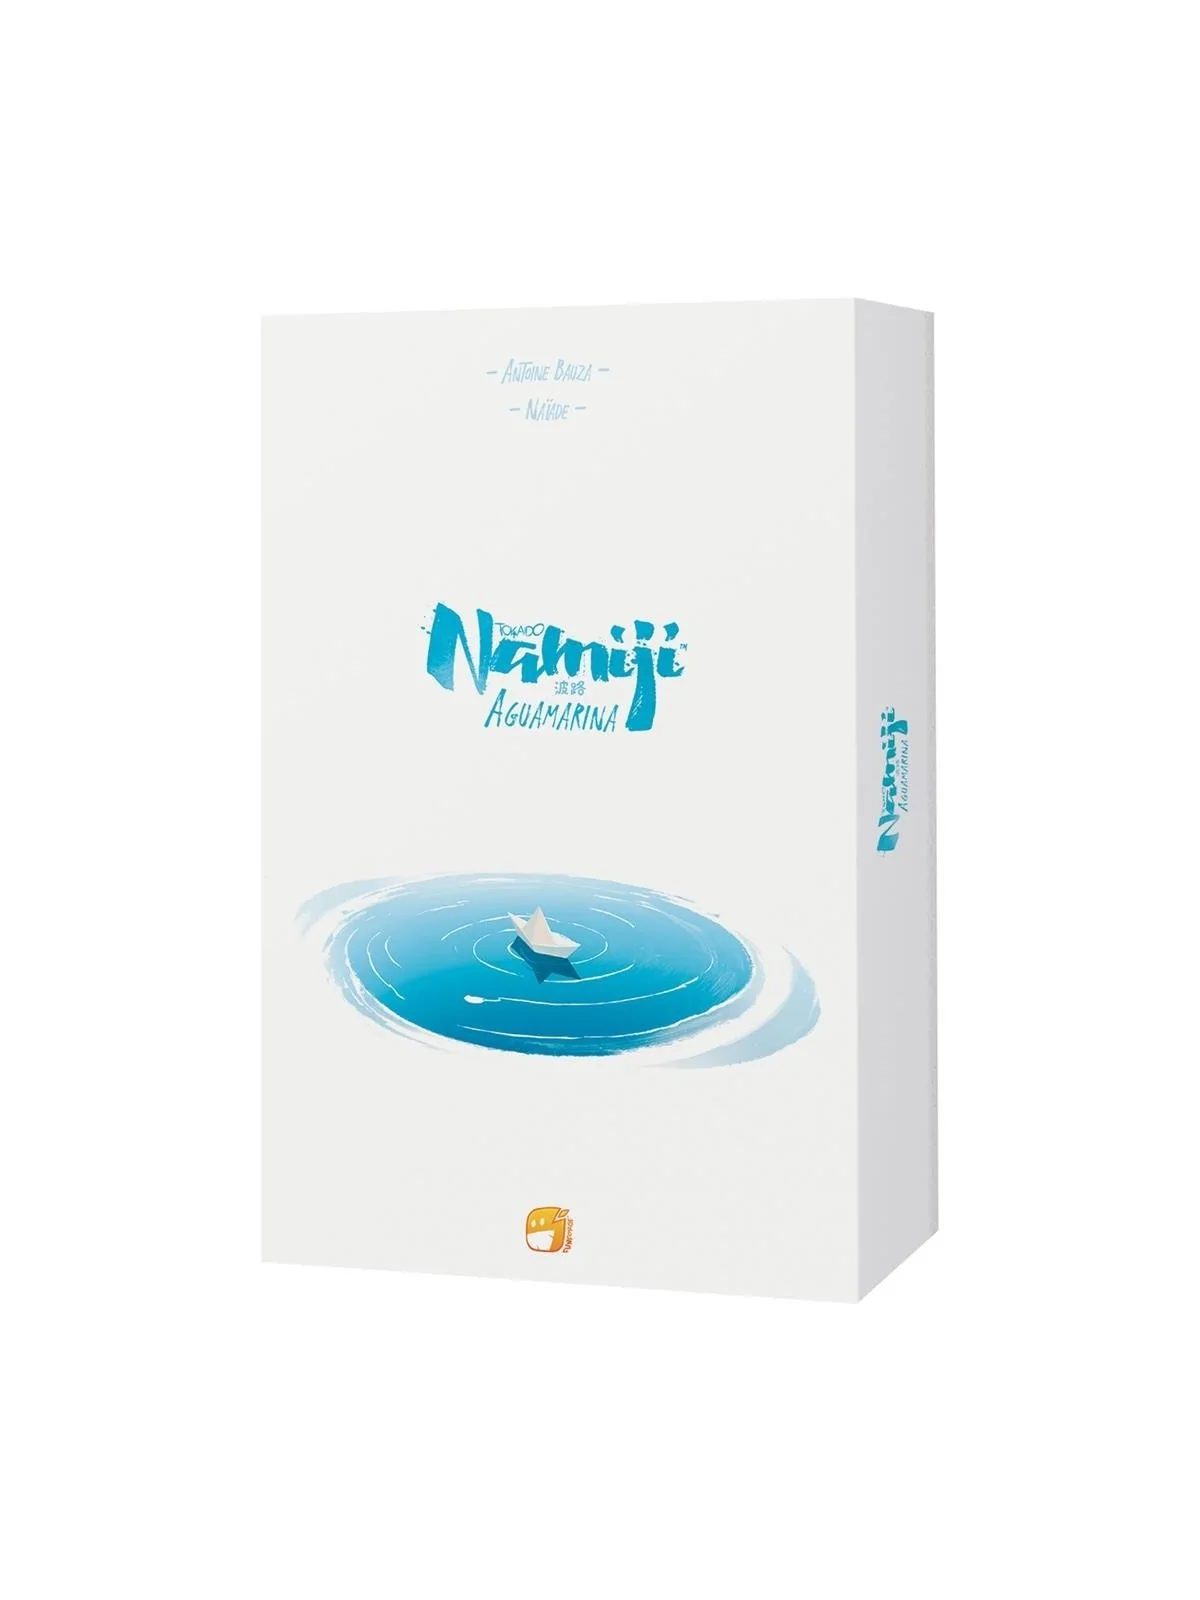 Comprar Namiji: Aquamarina barato al mejor precio 19,79 € de Funforge